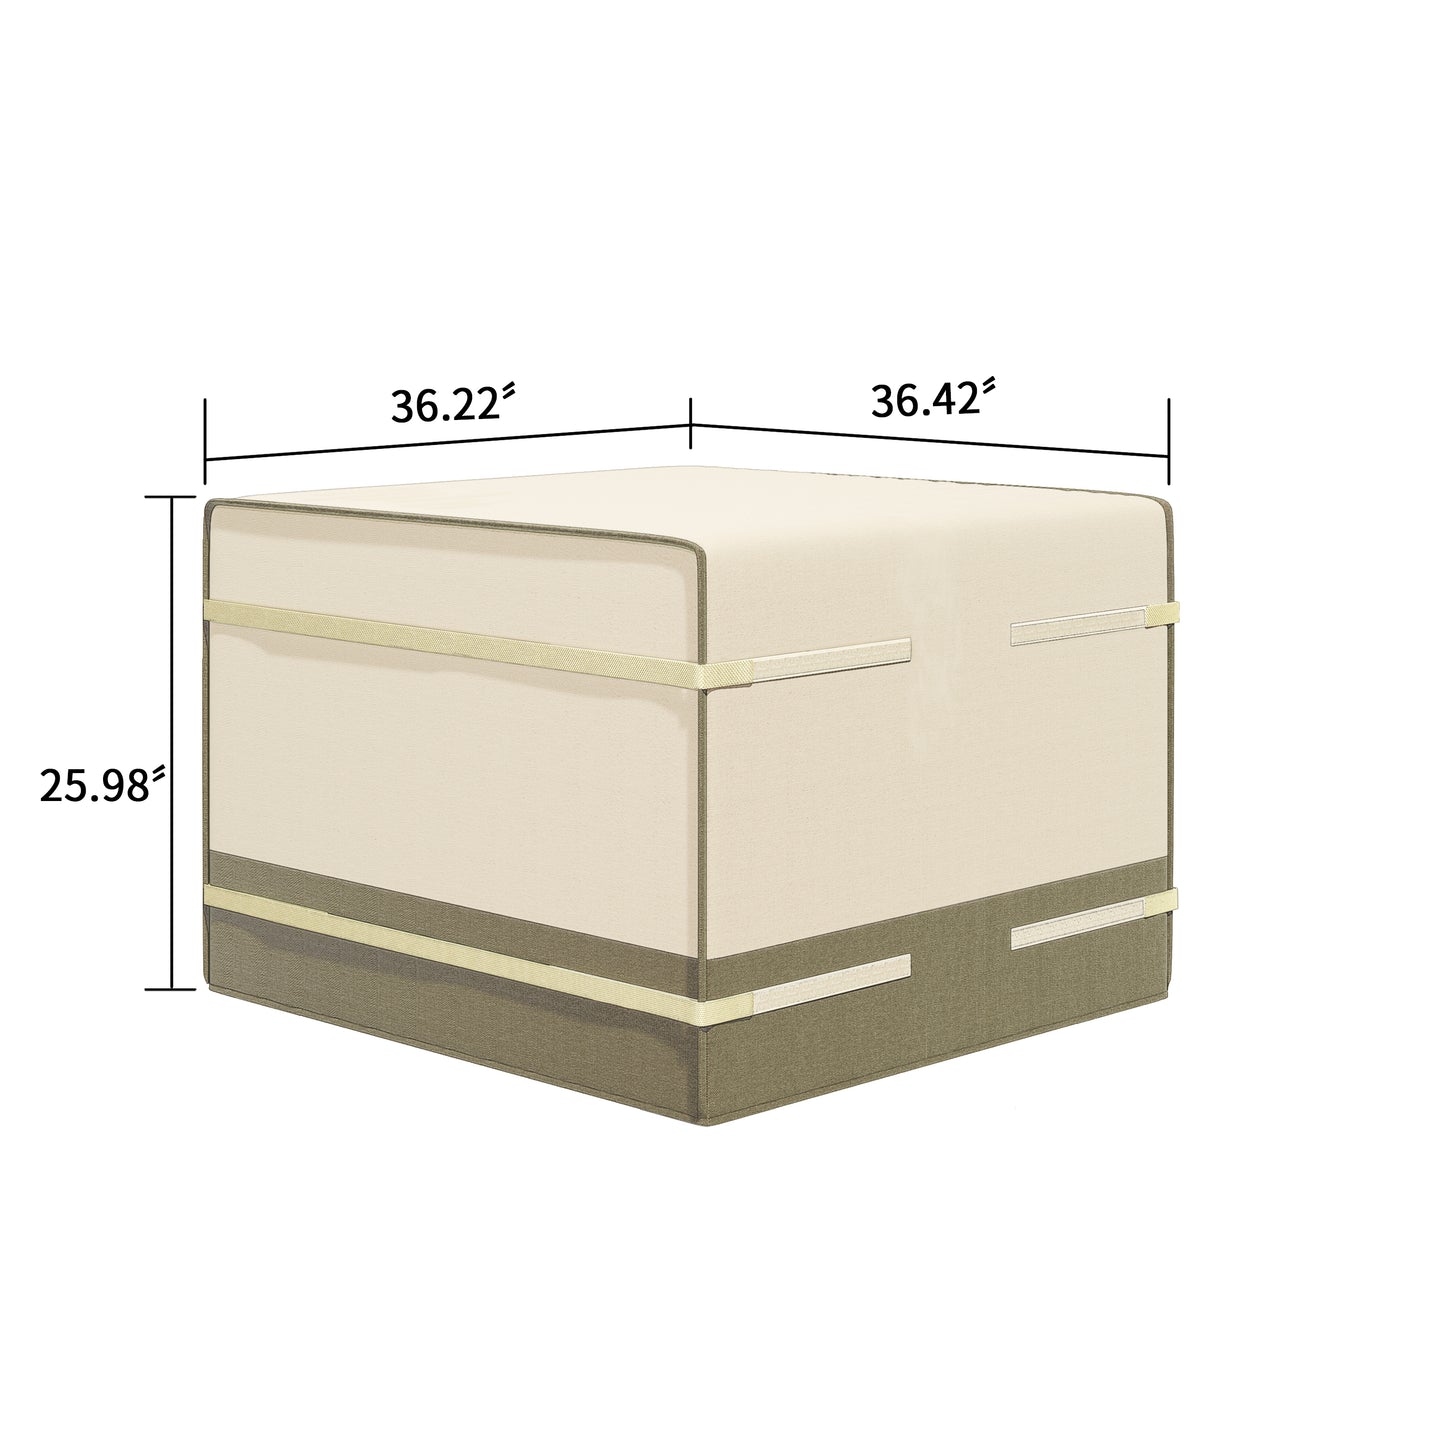 Sirio Small Multi-purpose Cover for Outdoor Furniture